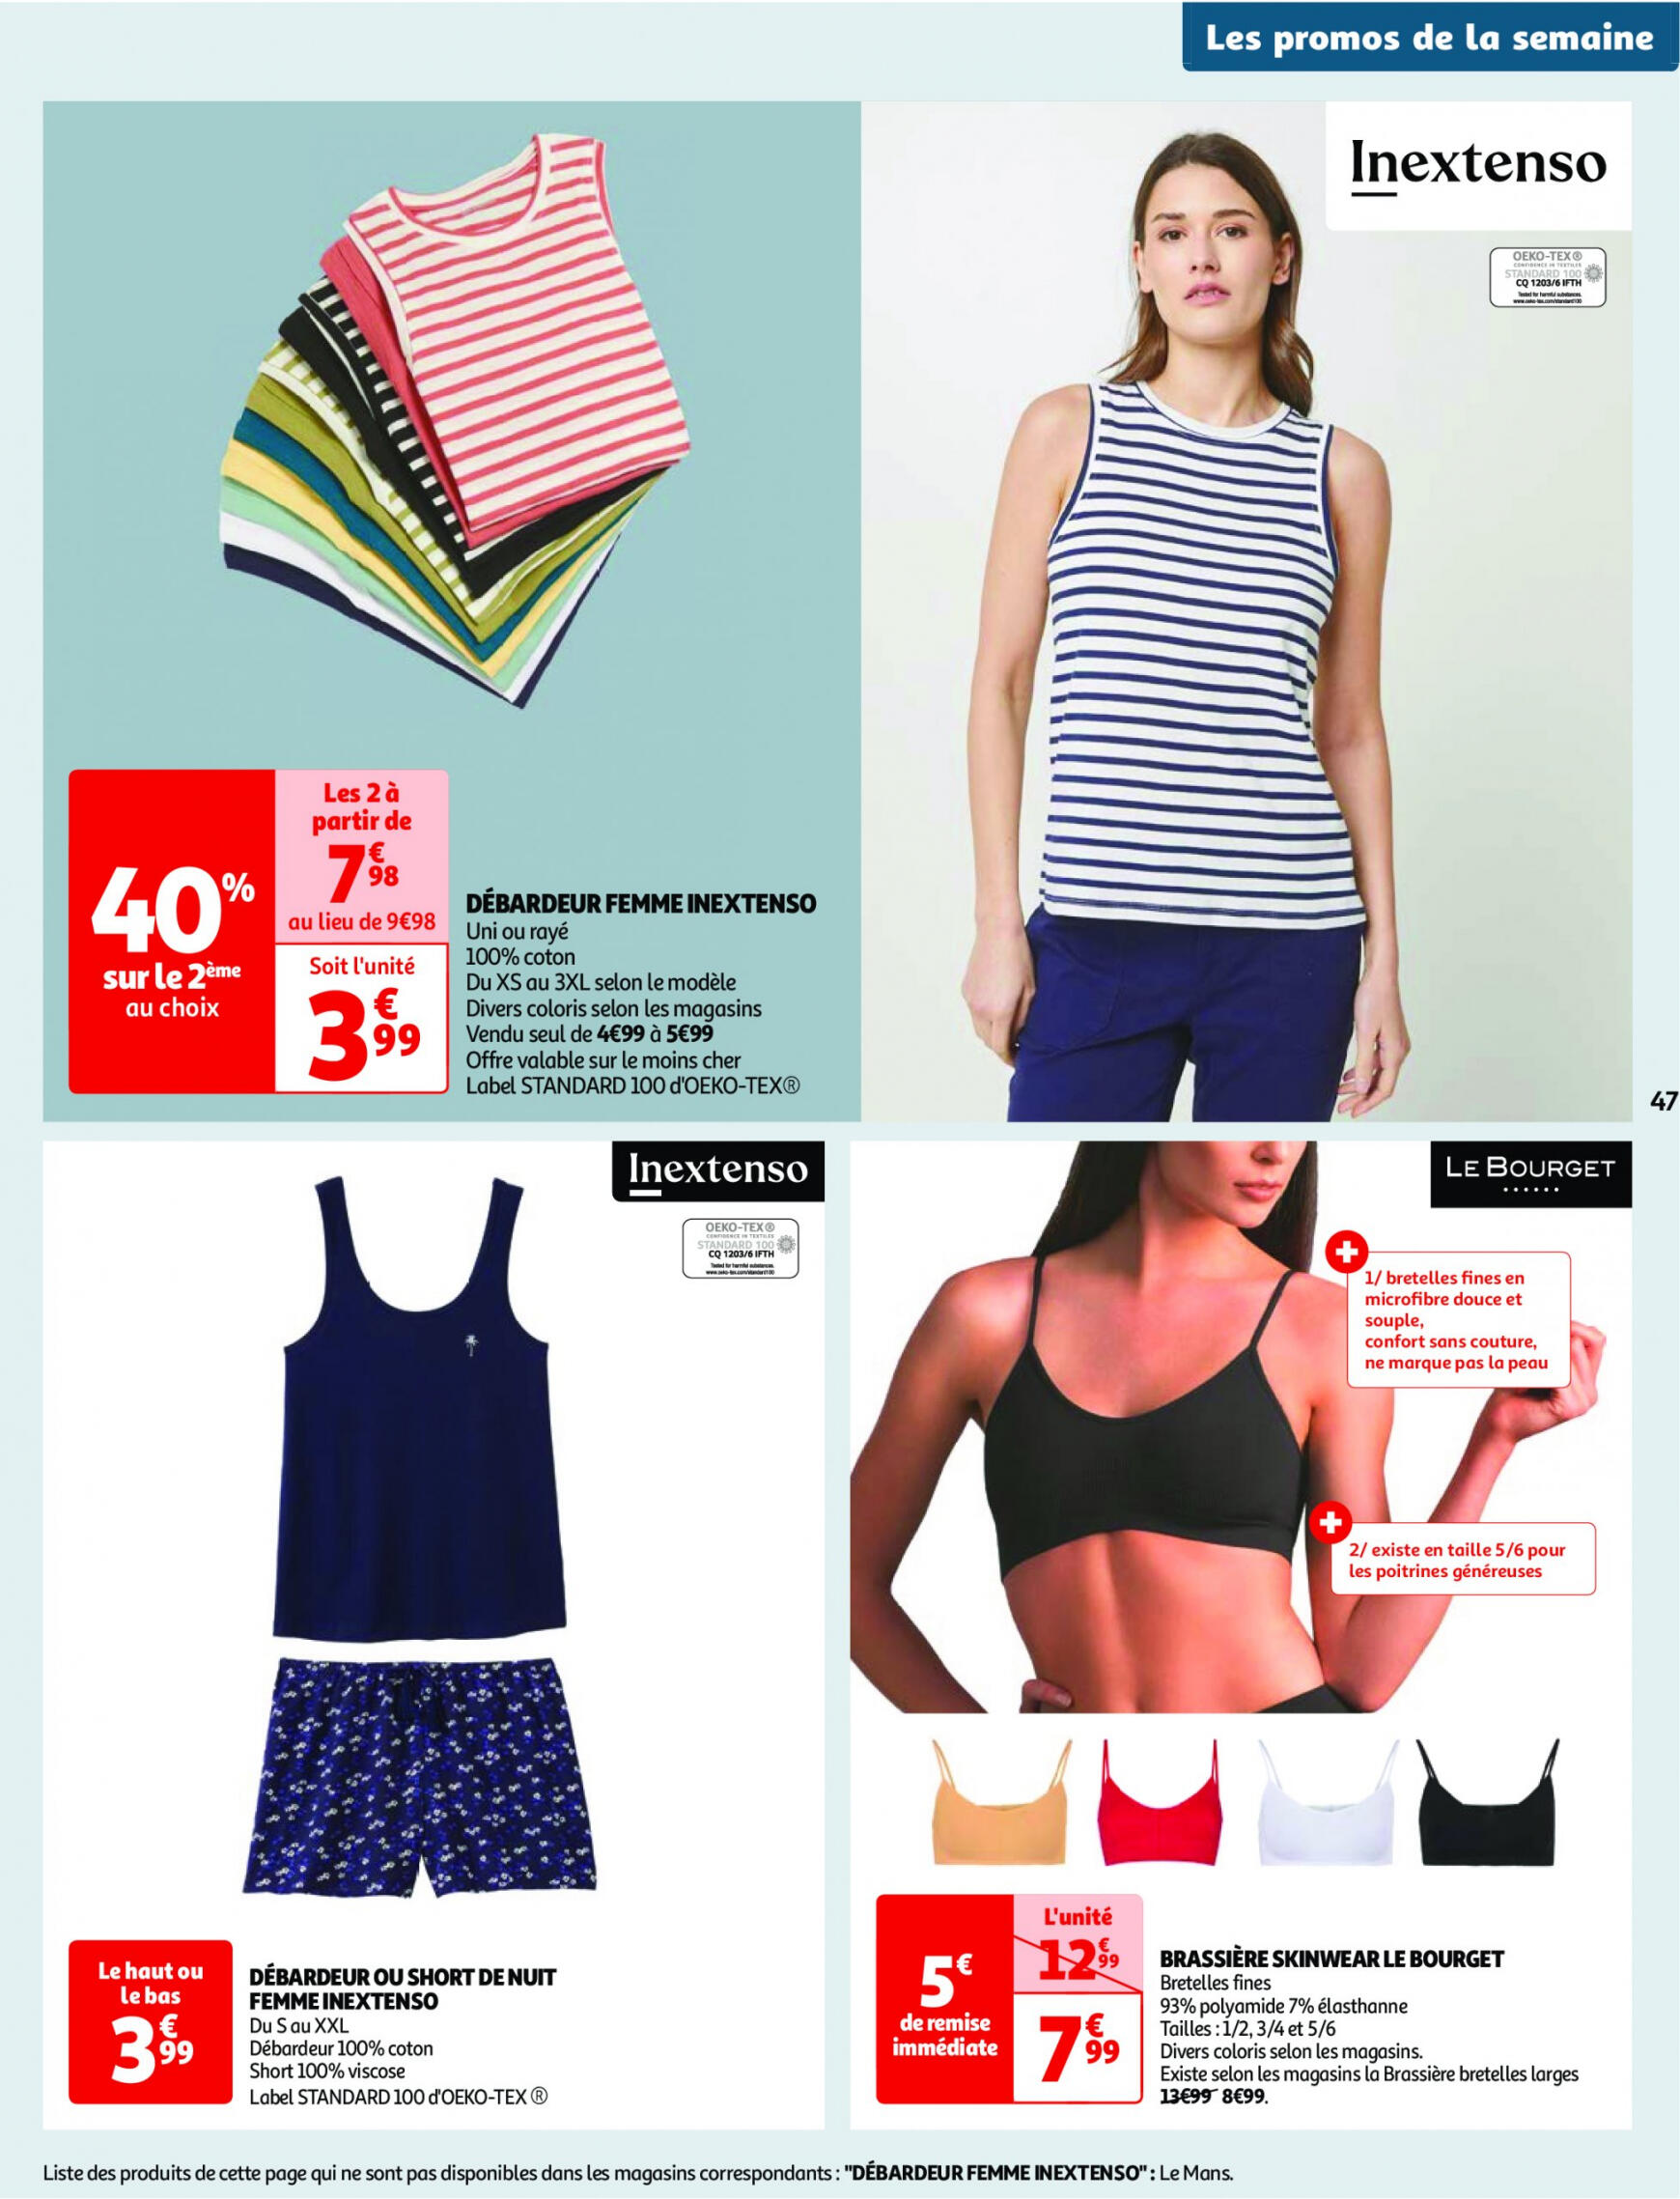 auchan - Auchan - Nos surgelés ont tout bon folder huidig 14.05. - 21.05. - page: 47